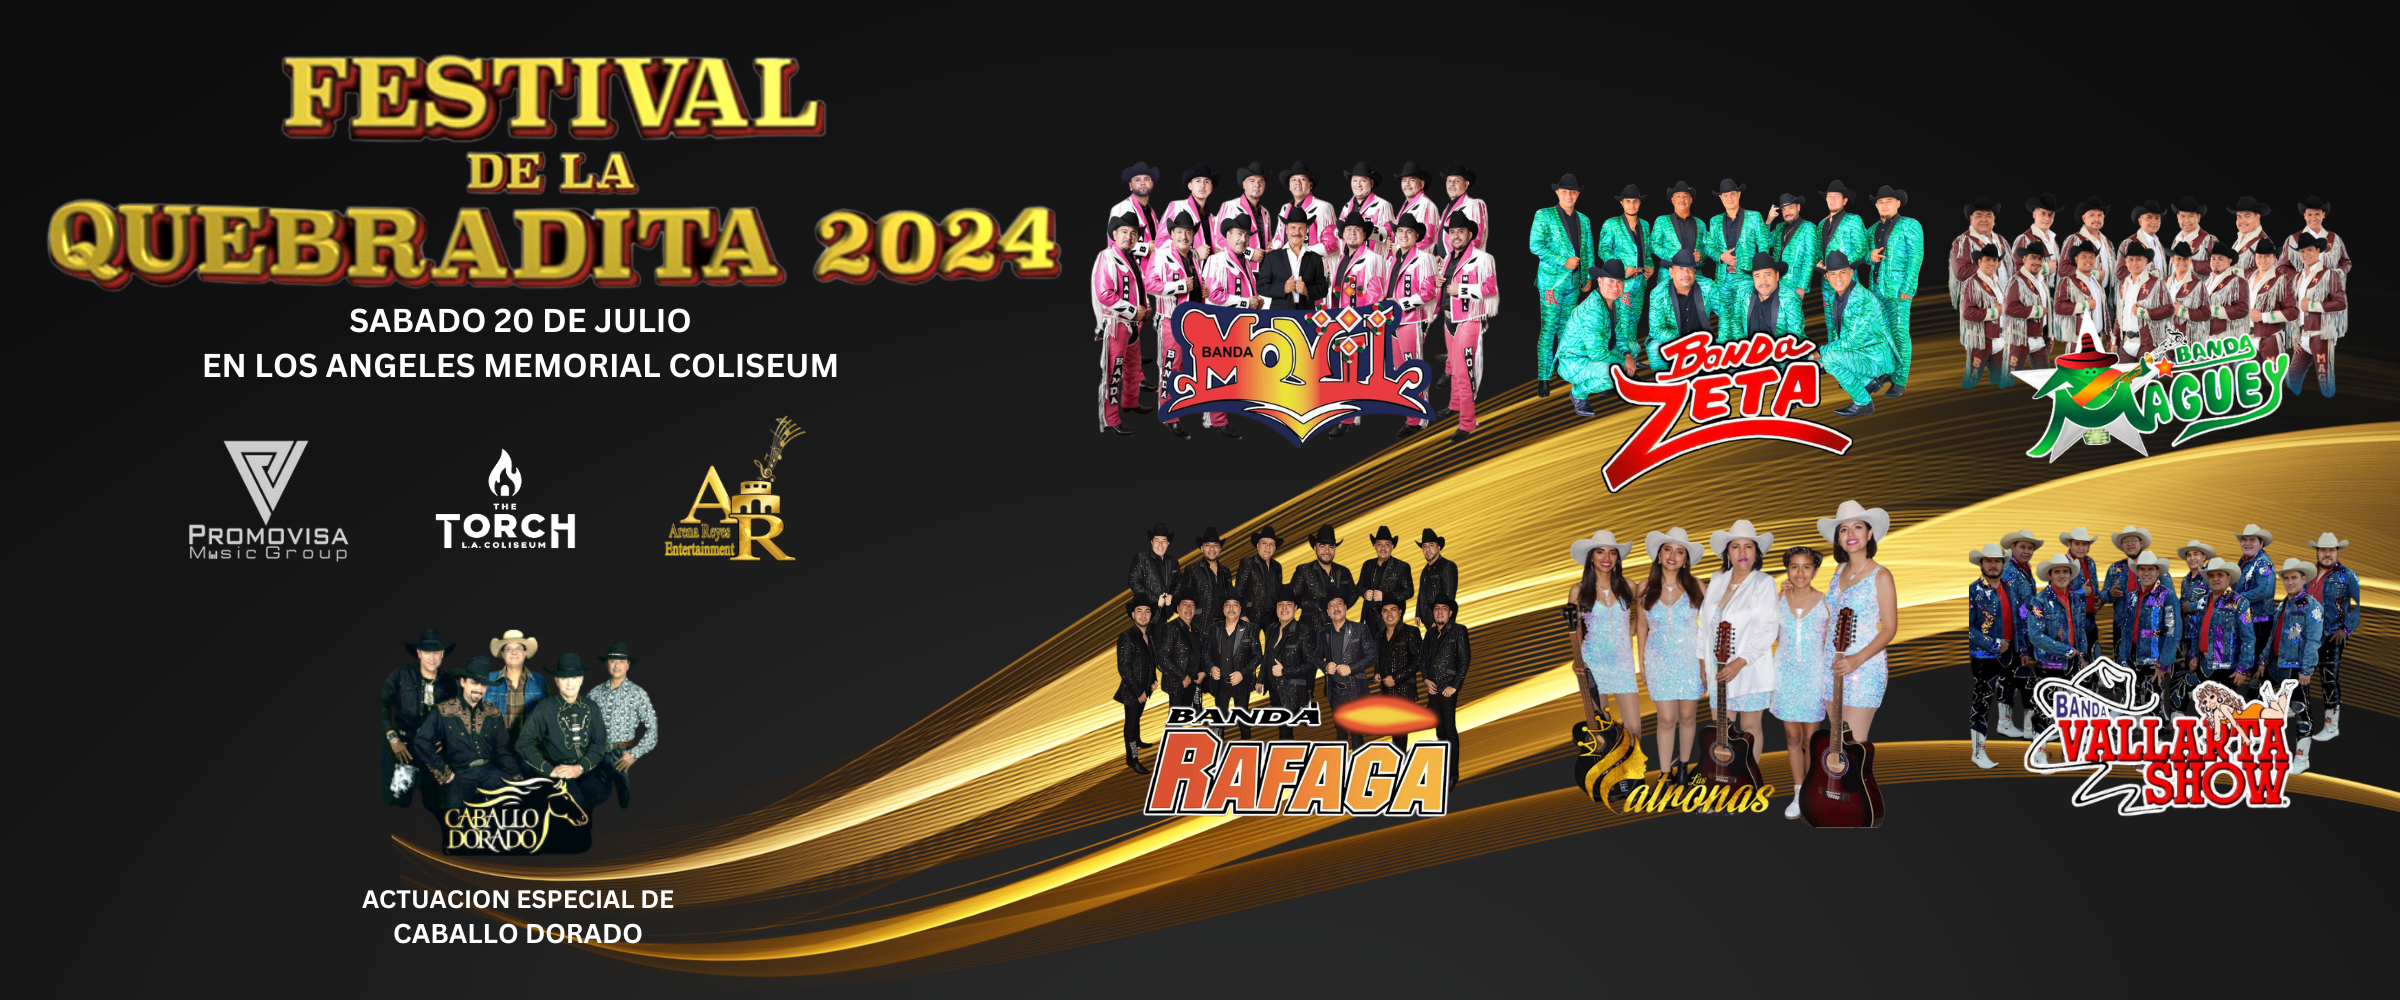 Festival de la Quebradita 2024